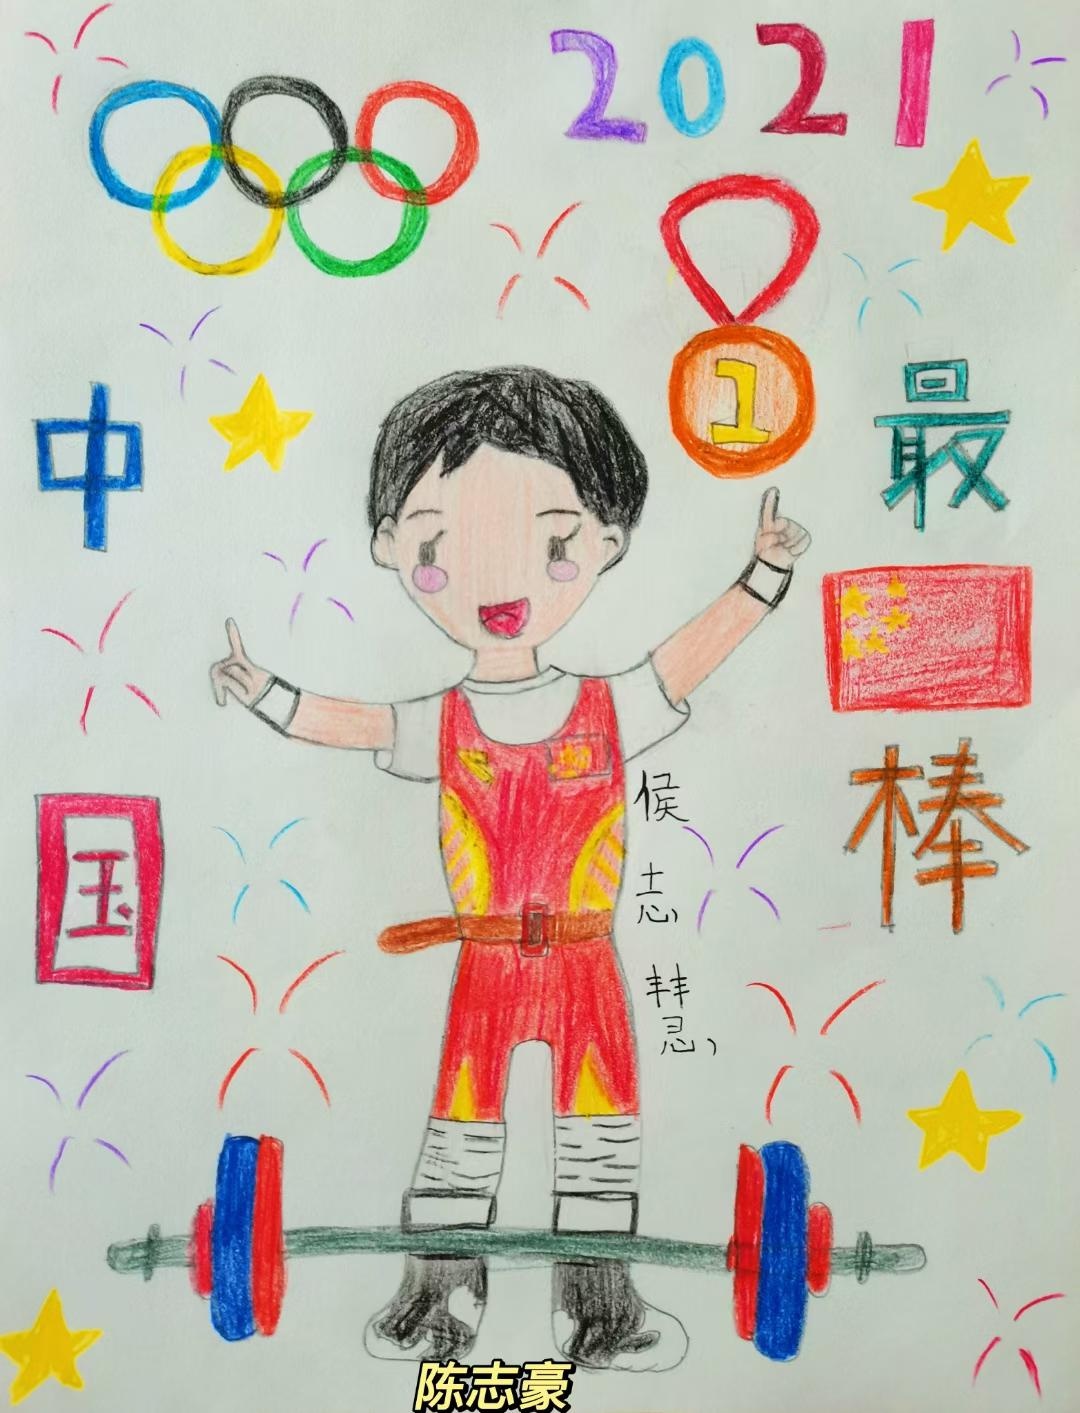 冷水滩梅湾小学:学生手绘奥运明星 致敬奥运健儿